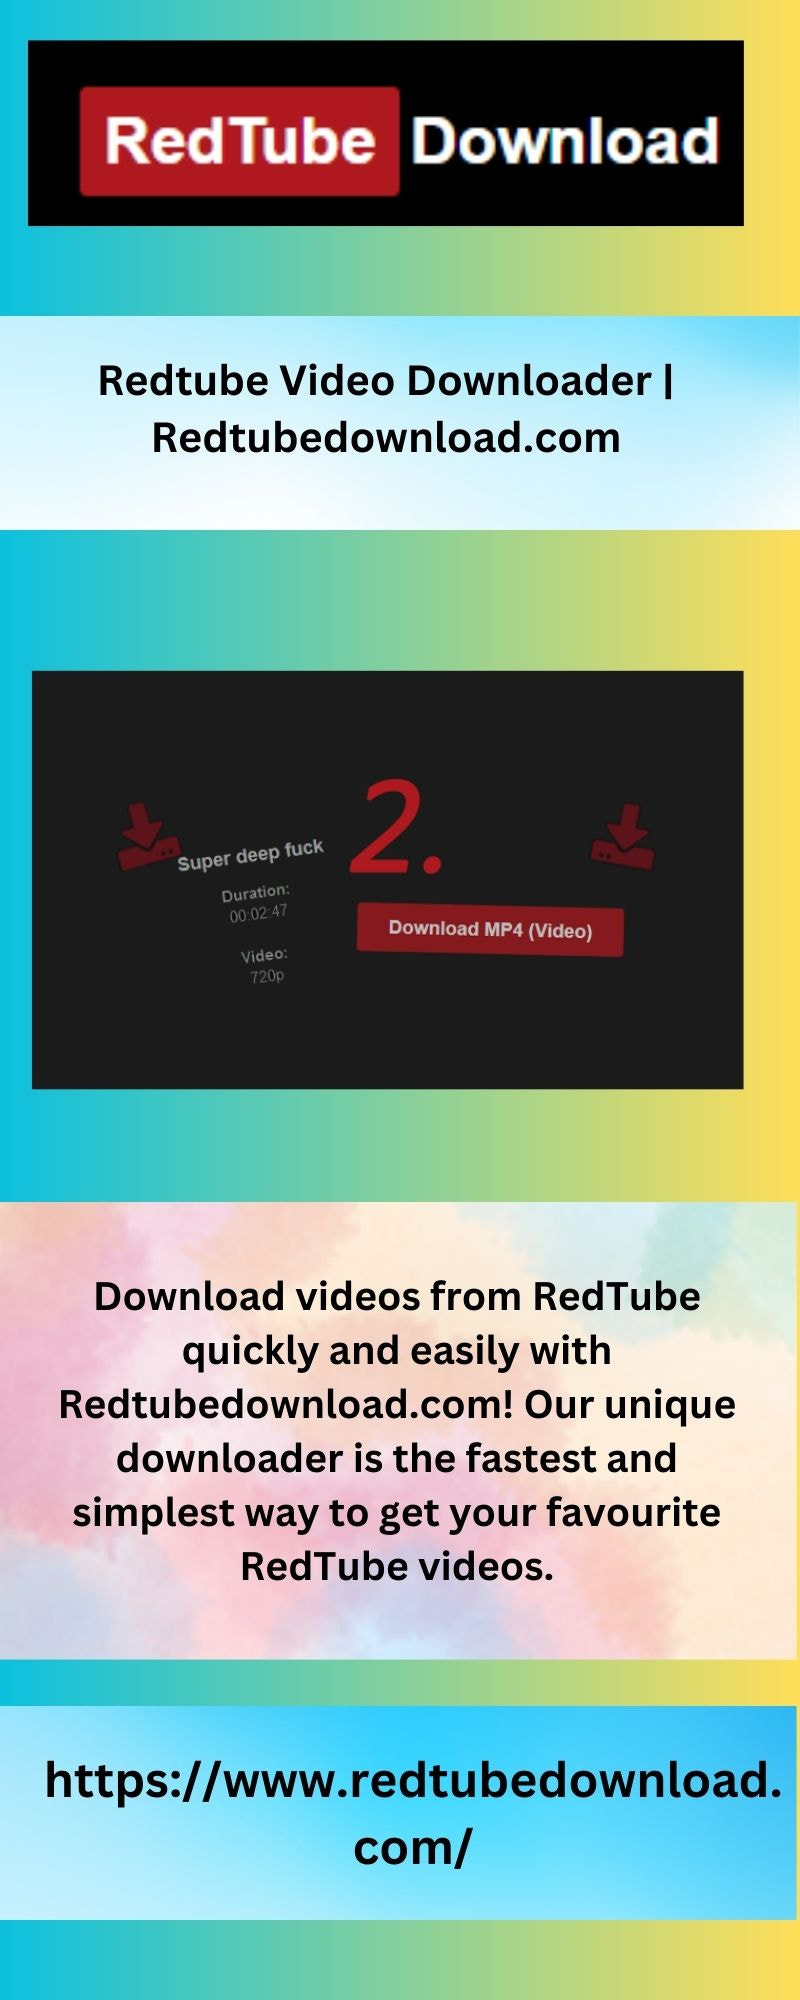 Redtube Video Downloader | Redtubedownload.com